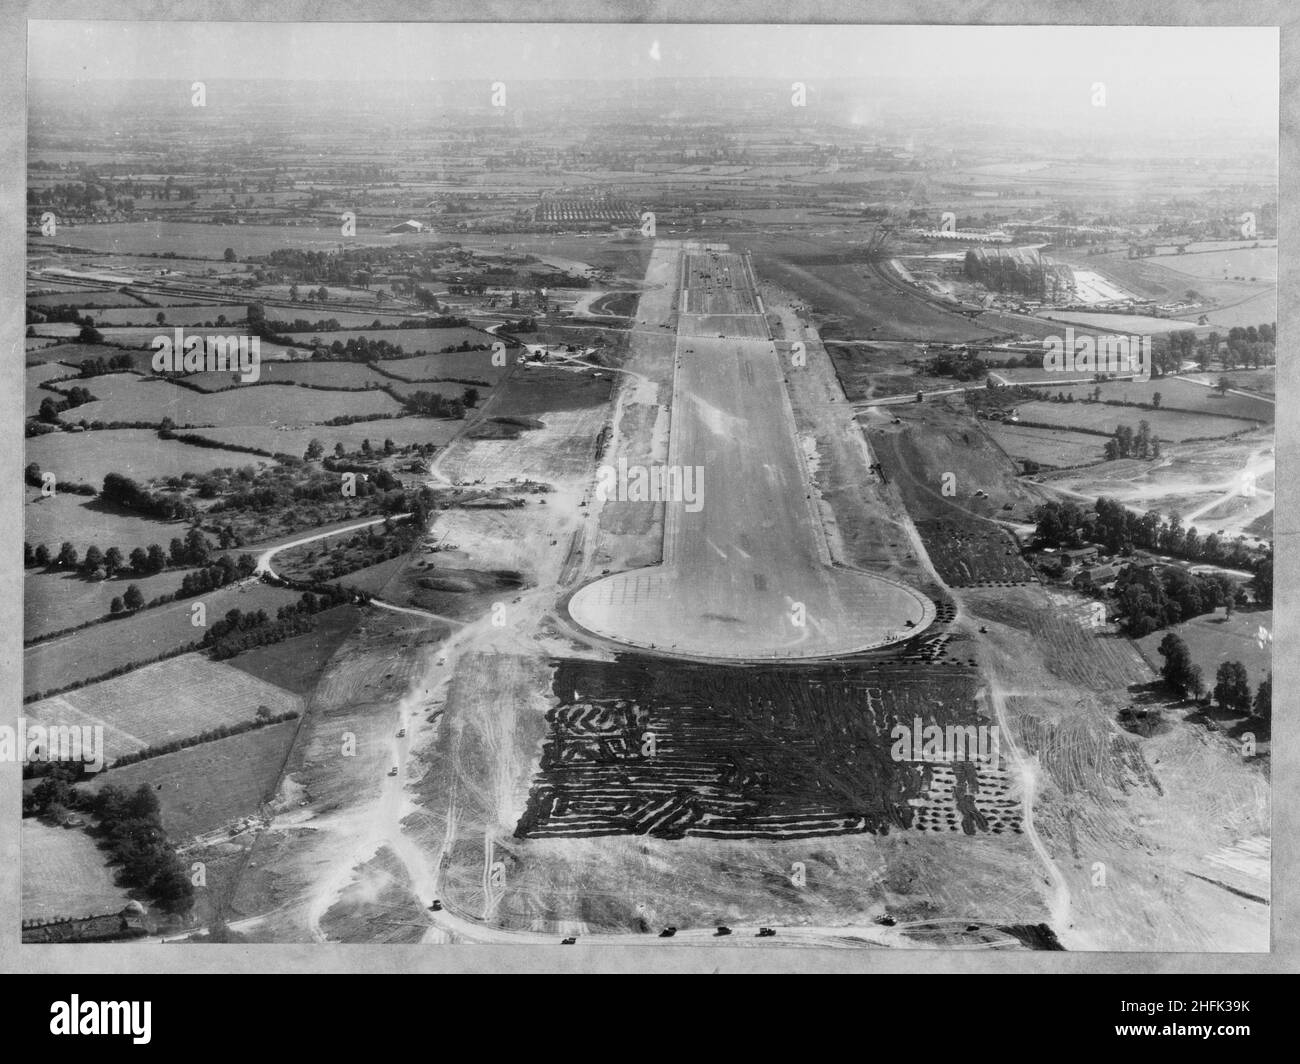 Filton Airfield, South Gloucestershire, 01/09/1947.Vue aérienne de l'ouest montrant la construction d'une nouvelle piste à l'aérodrome de Filton.Laing a prolongé la piste vers l'ouest à l'aérodrome de Filton pour accueillir le Bristol Brabazon, qui était en cours de construction à l'aérodrome.Les travaux ont commencé en juillet 1946 sur la nouvelle piste, qui avait une longueur de 2 725 mètres et une largeur de 100 mètres.Les travaux ont nécessité la réquisition et l'enlèvement du village de Charlton et une bande volante temporaire a été posée, pour être utilisée pendant la construction de la nouvelle piste.Le négatif de cette impression a été numérisé et catalogué dans le cadre de Banque D'Images